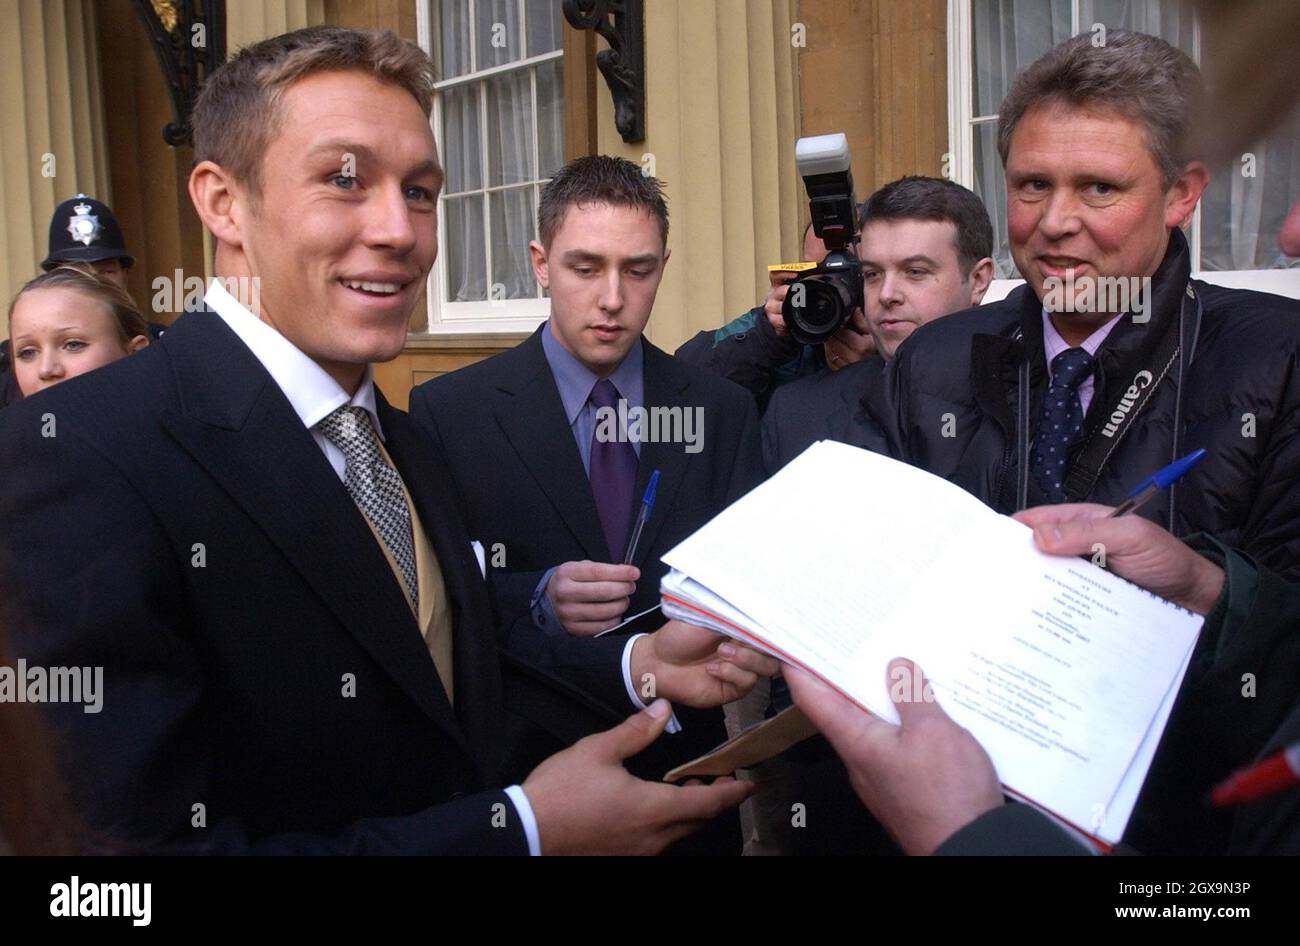 L'eroe inglese della Coppa del mondo di rugby Jonny Wilkinson, 24, a Buckingham Palace a Londra mentre espone il MBE (membro dell'Ordine dell'Impero britannico) che ha ricevuto dalla regina britannica Elizabeth II. Foto Stock